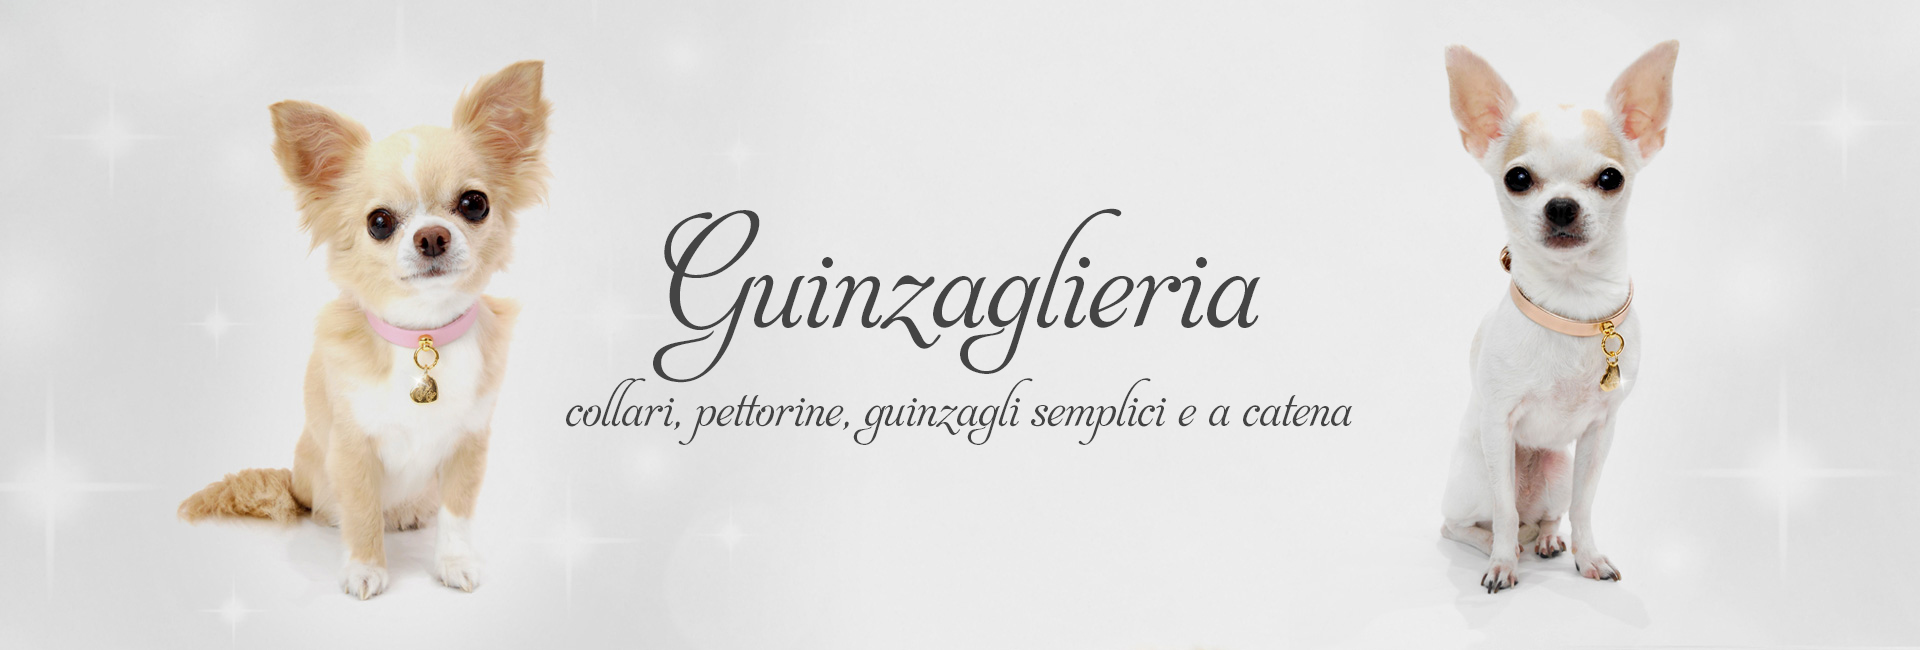 Guinzaglieria